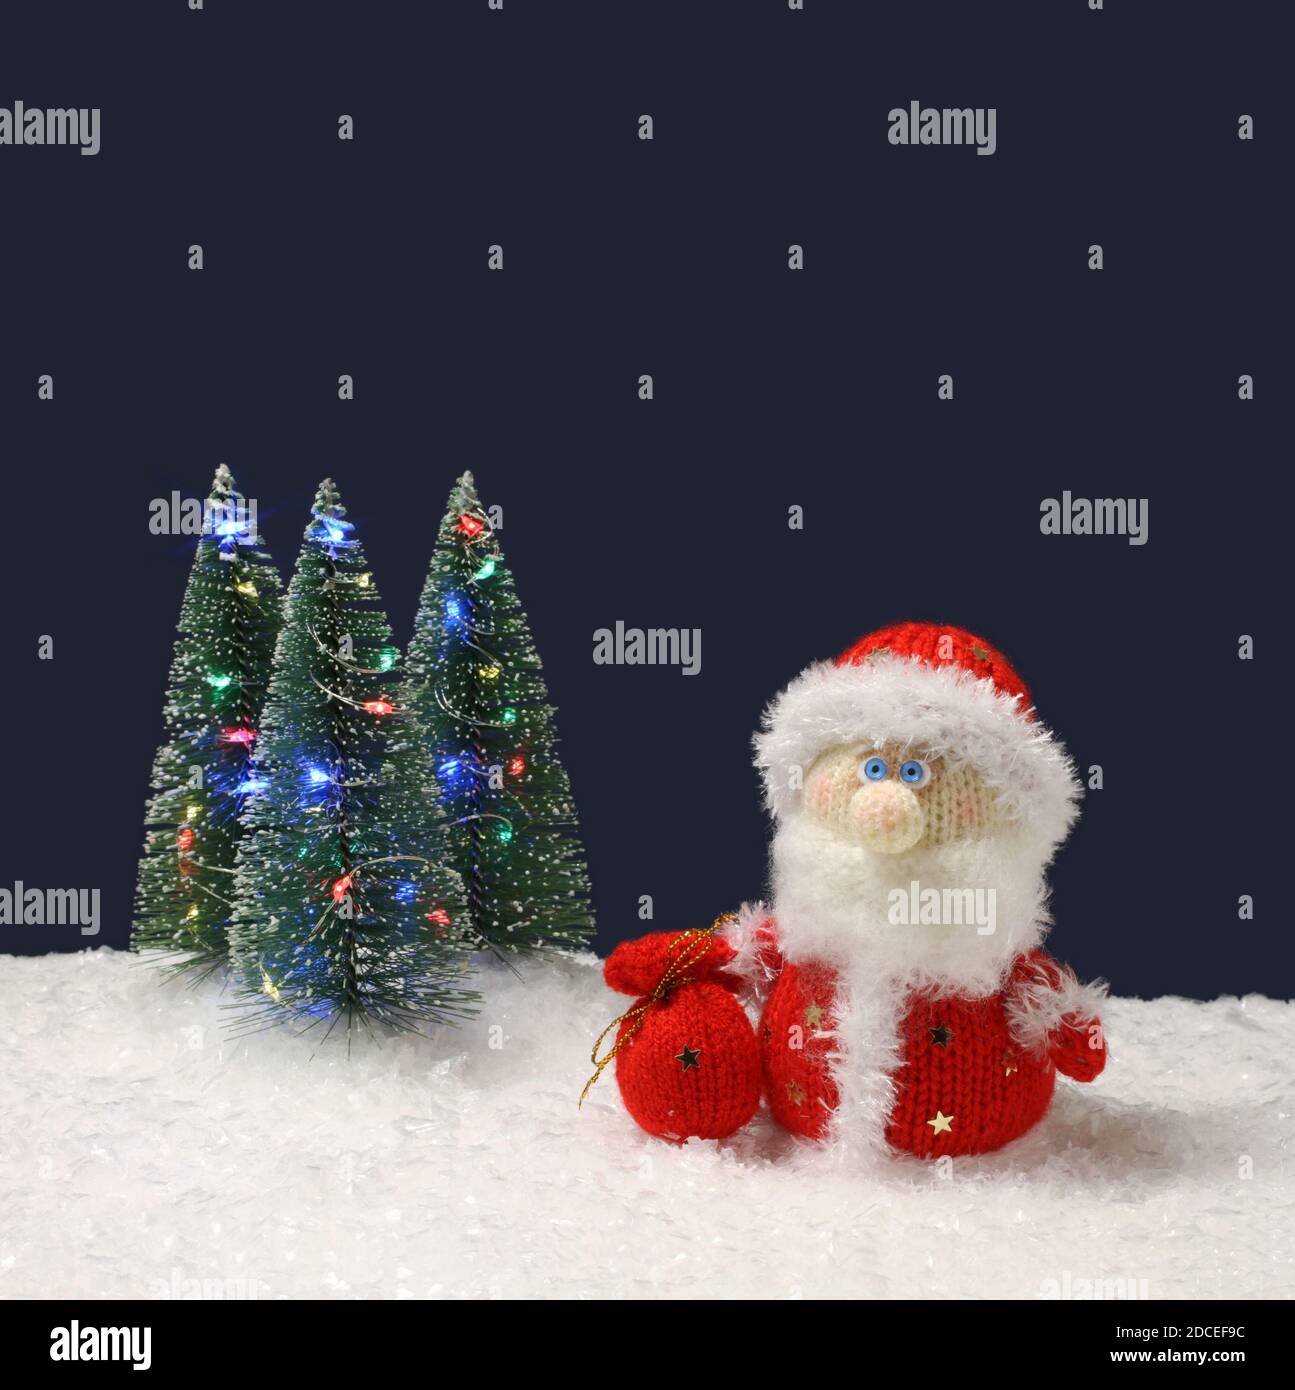 El juguete lana de punto Santa Claus se encuentra junto a los árboles de  Navidad verde juguete con luces sobre la nieve blanca artificial contra  fondo azul marino. Cerrar Fotografía de stock -